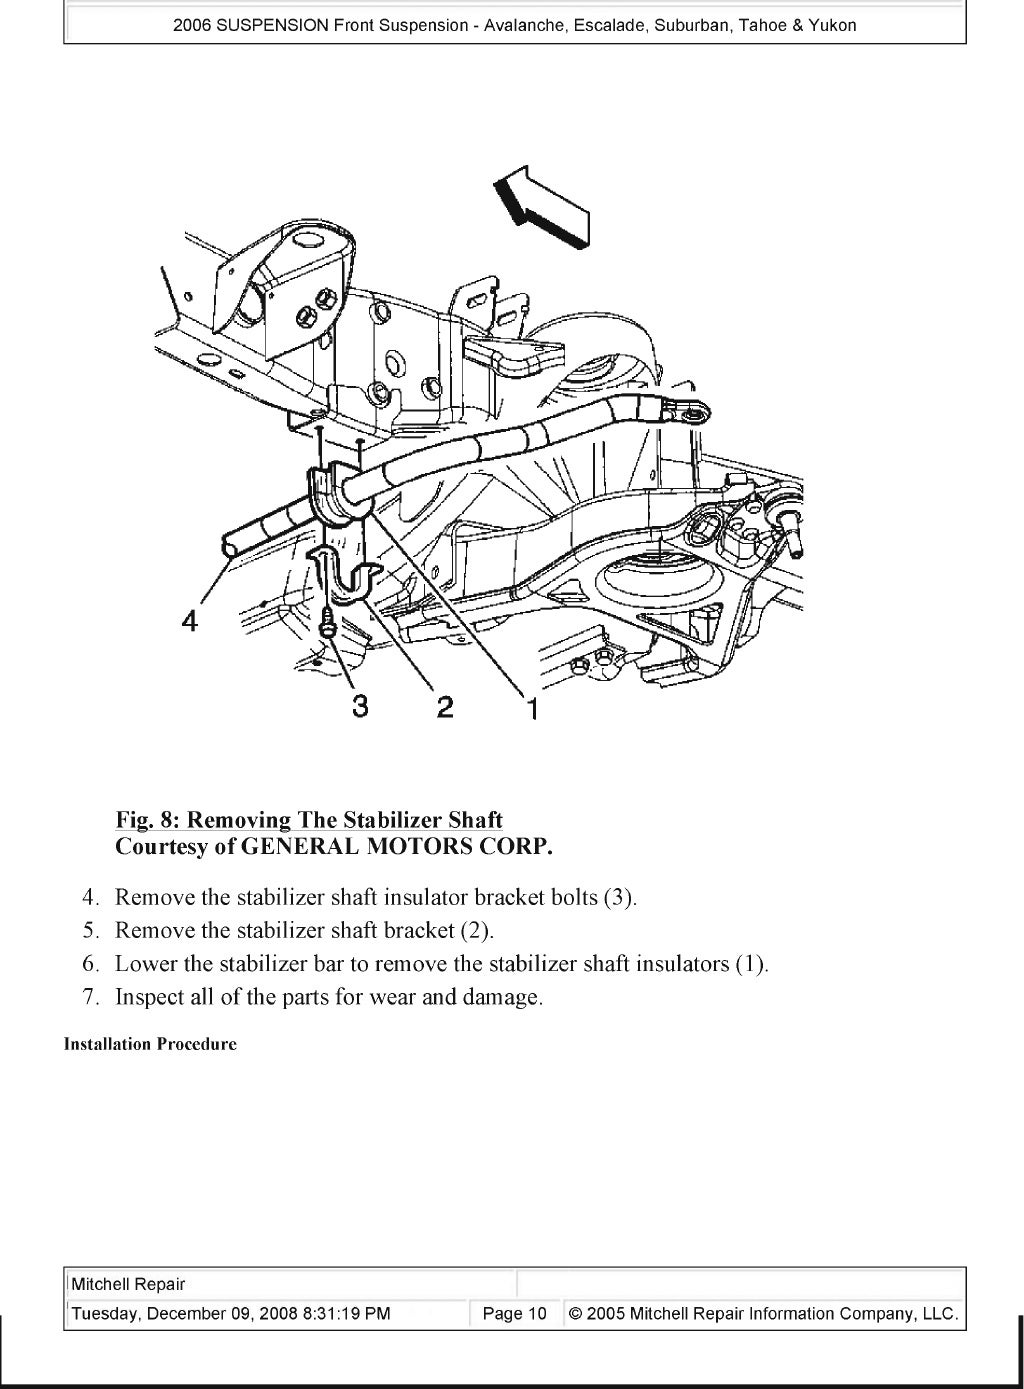 2000 Chevrolet Suburban Service Repair Manual